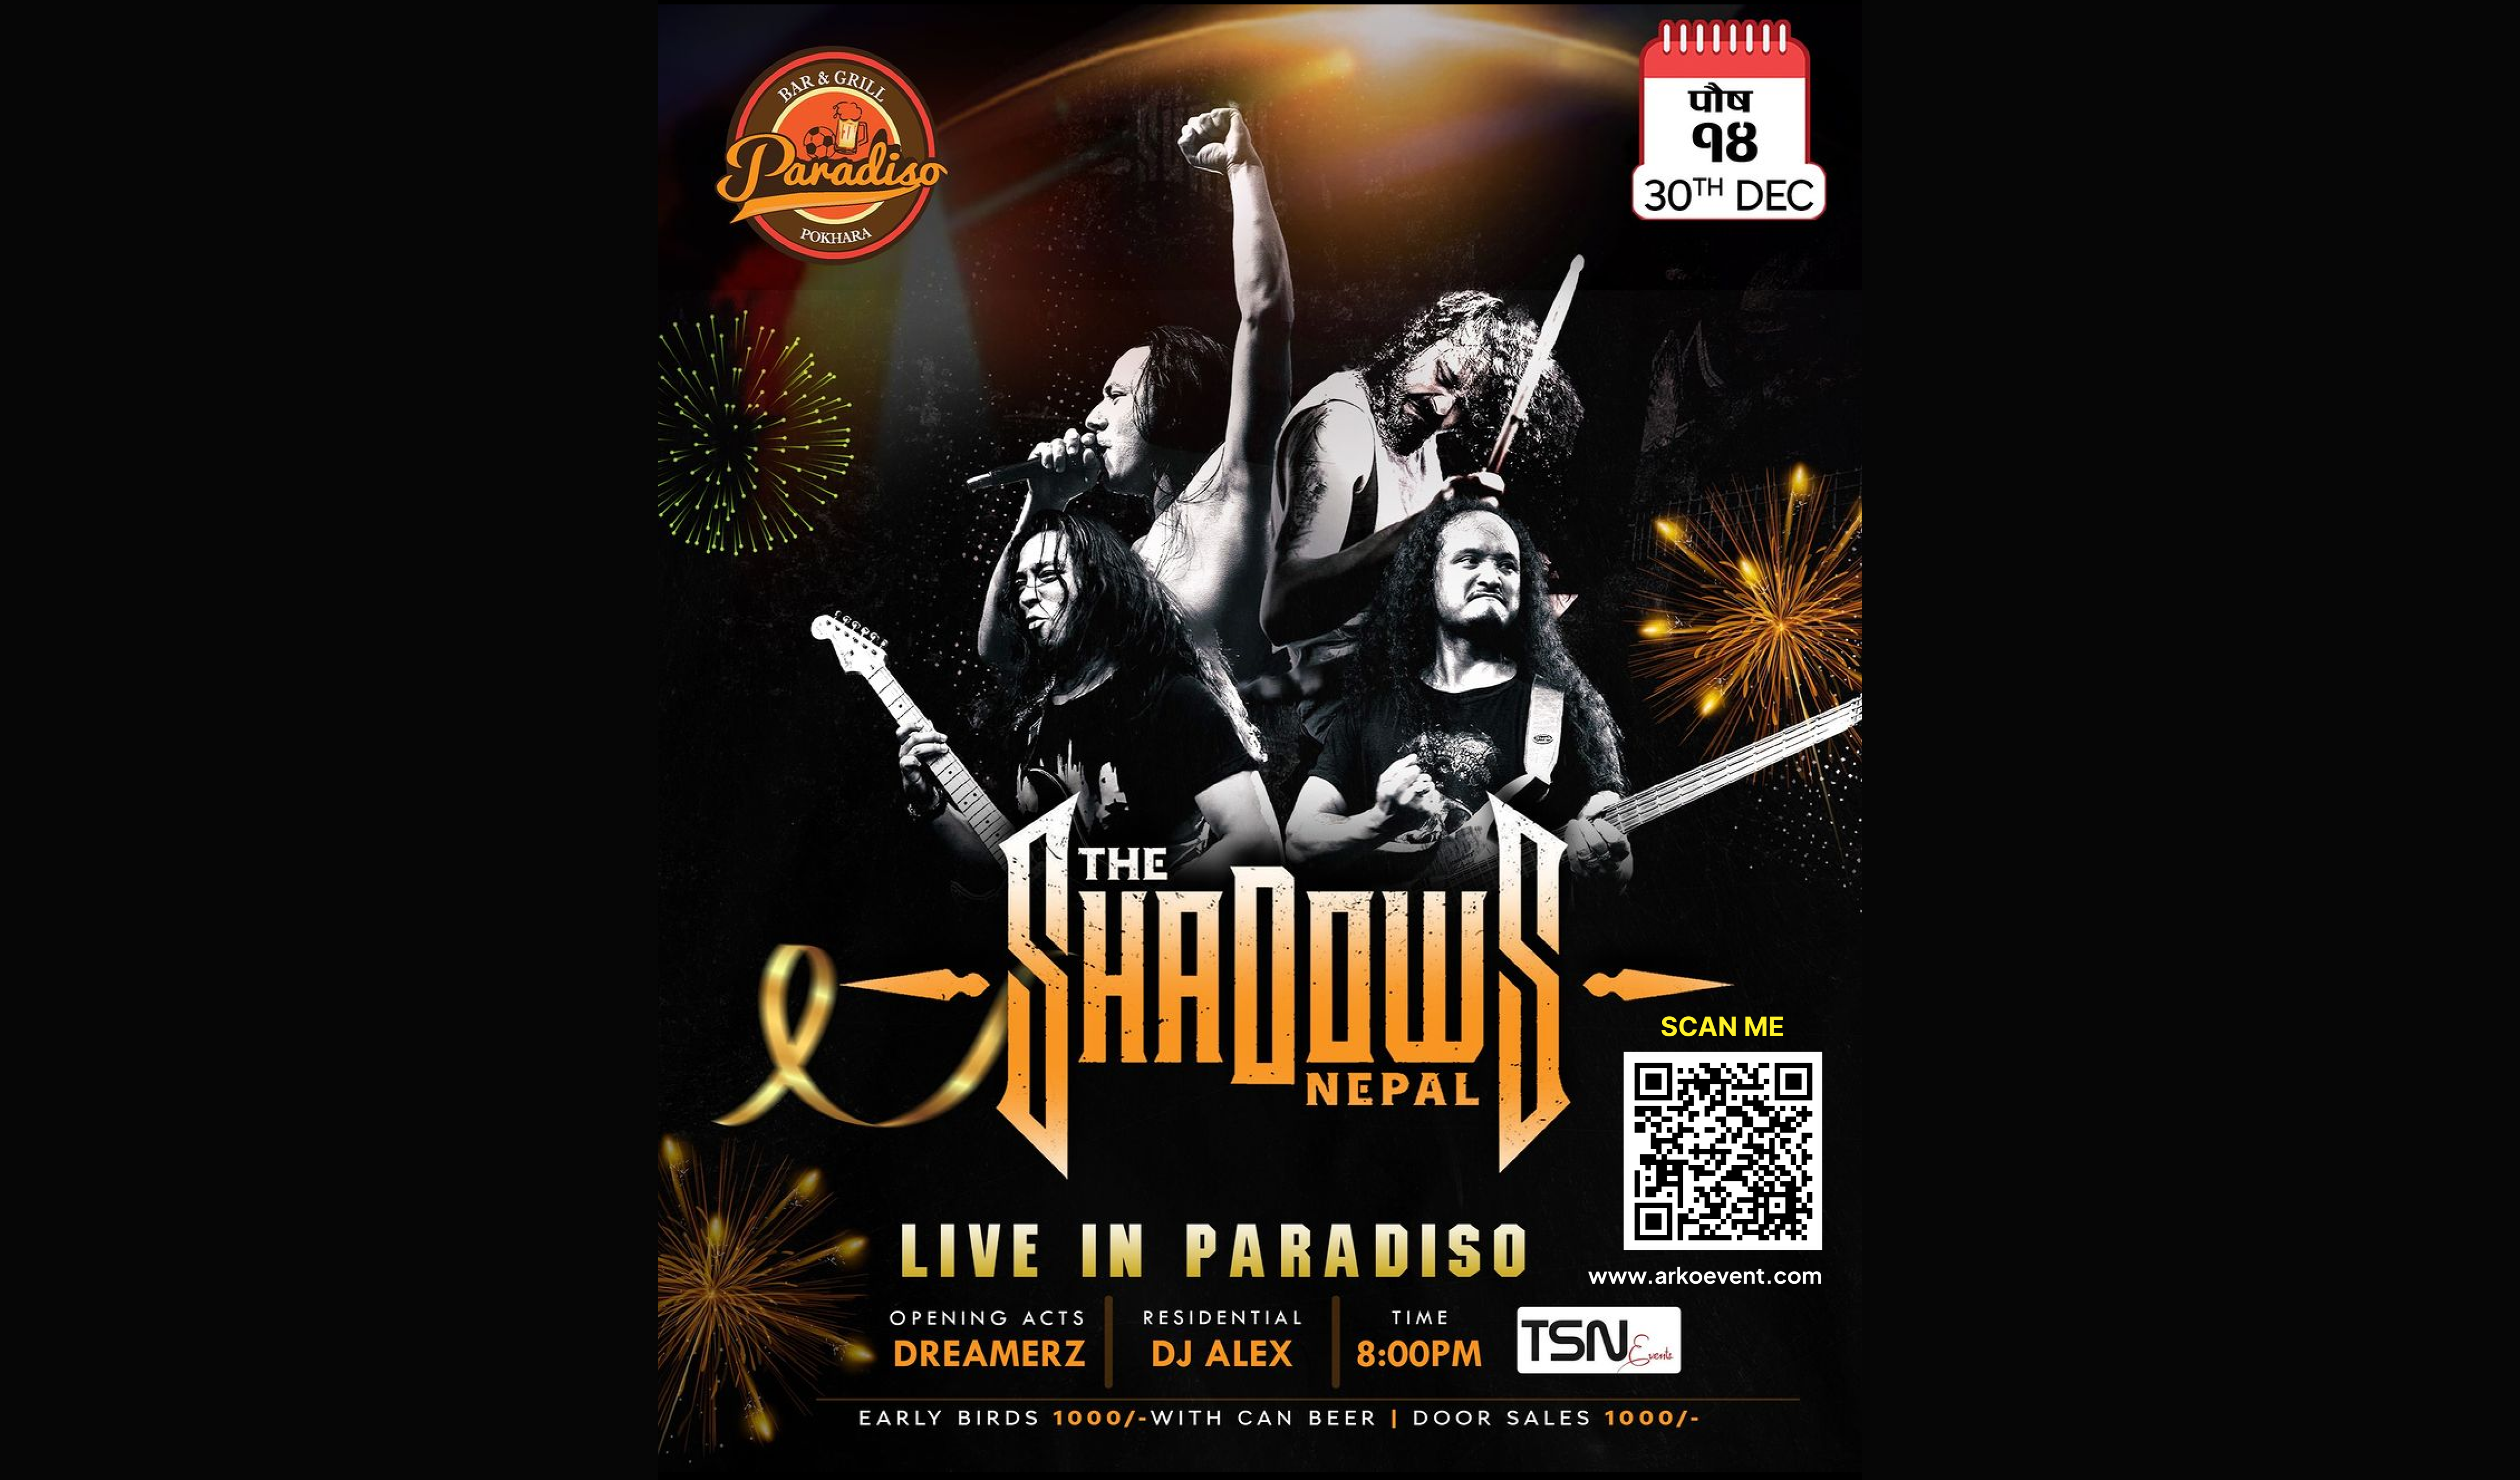 Shadows Band Live at Paradiso Pokhara